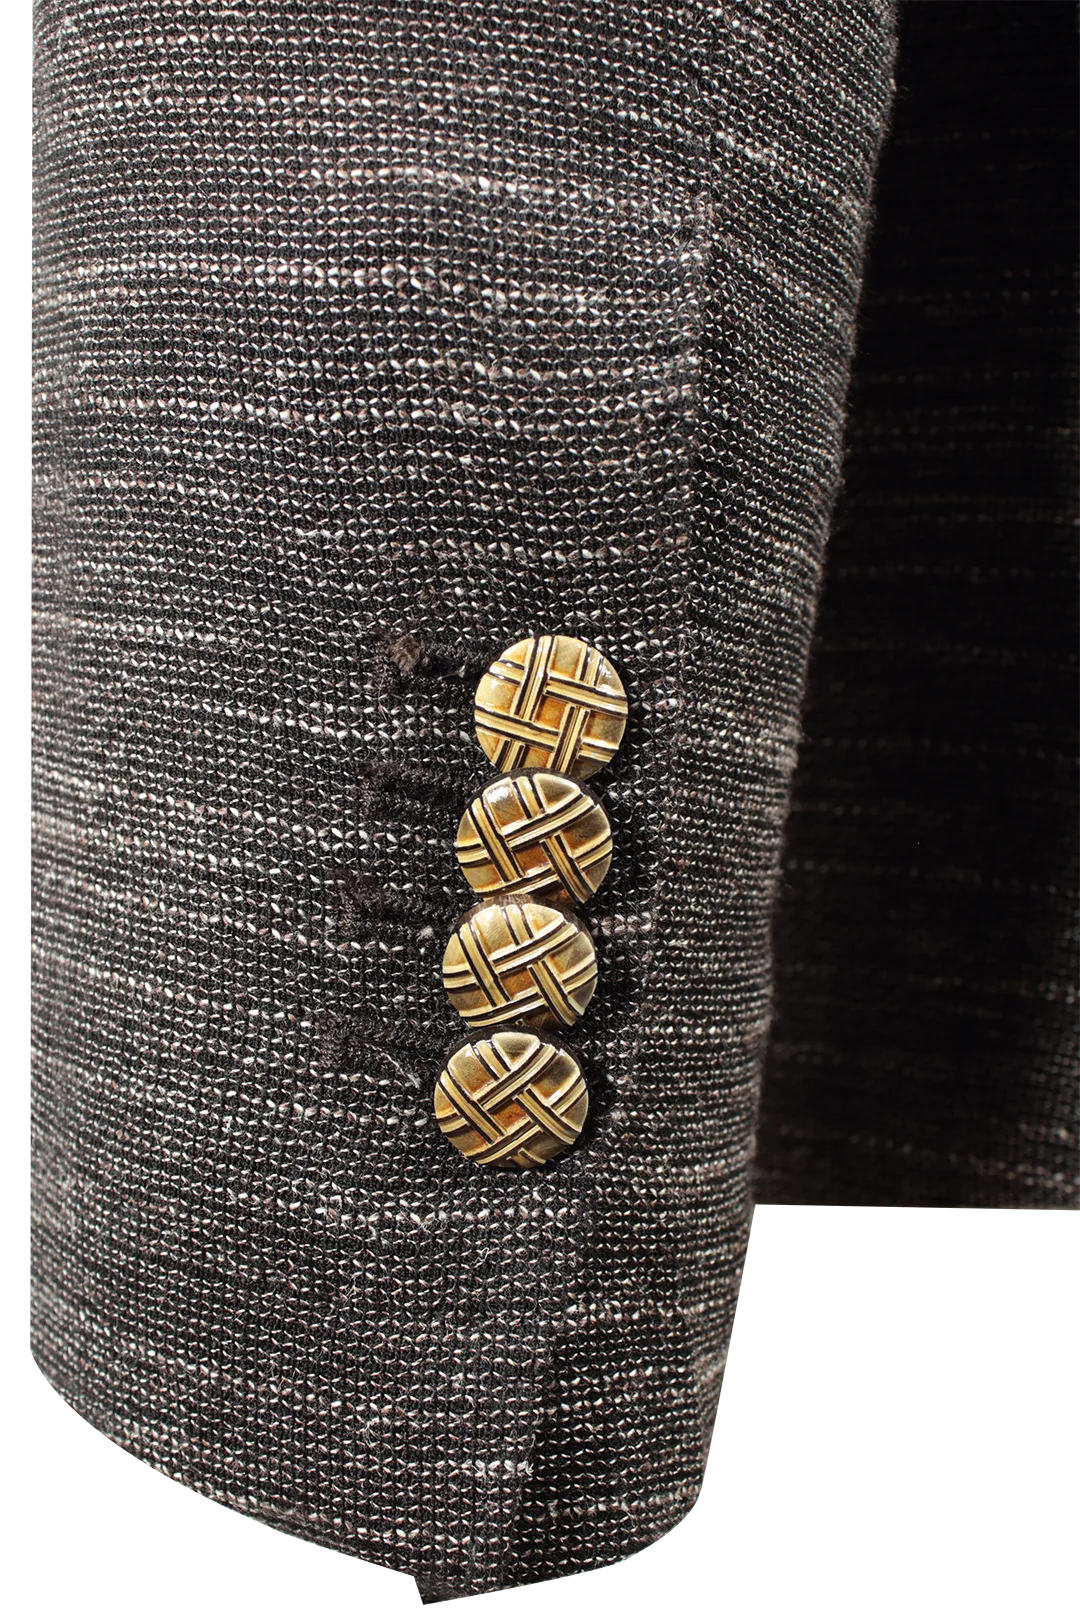 Giacca monopetto in lana, cotone e lino color terra manica